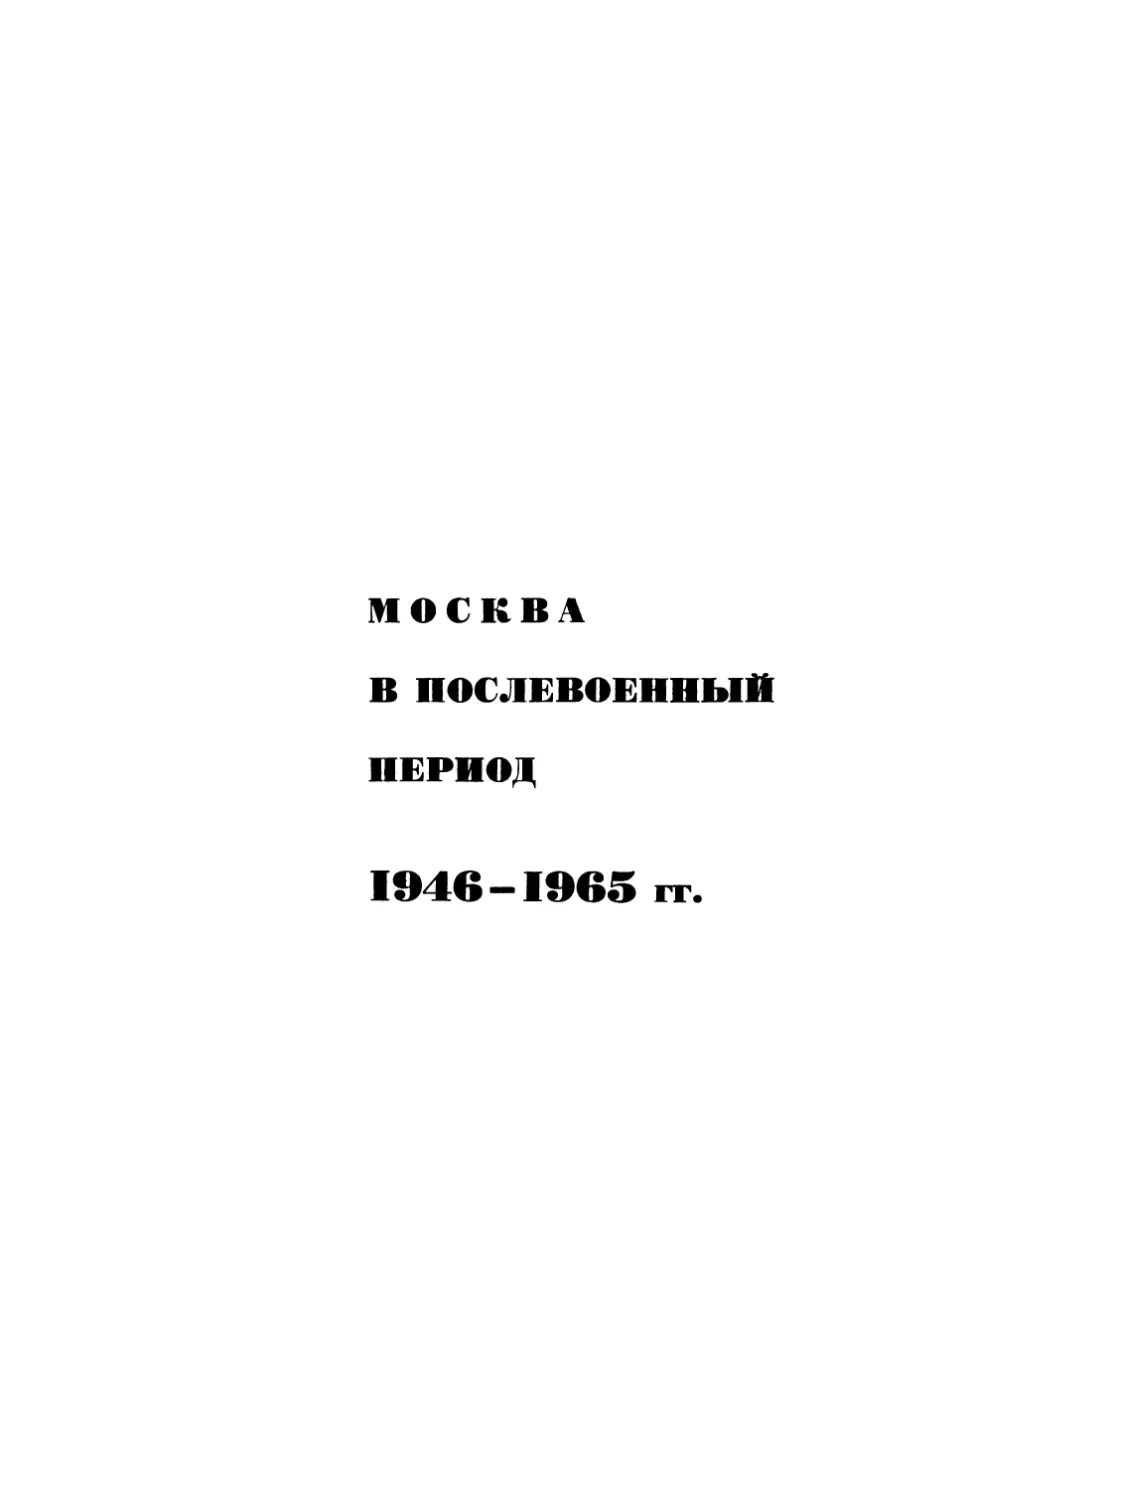 Москва в послевоенный период 1946—1965 гг.